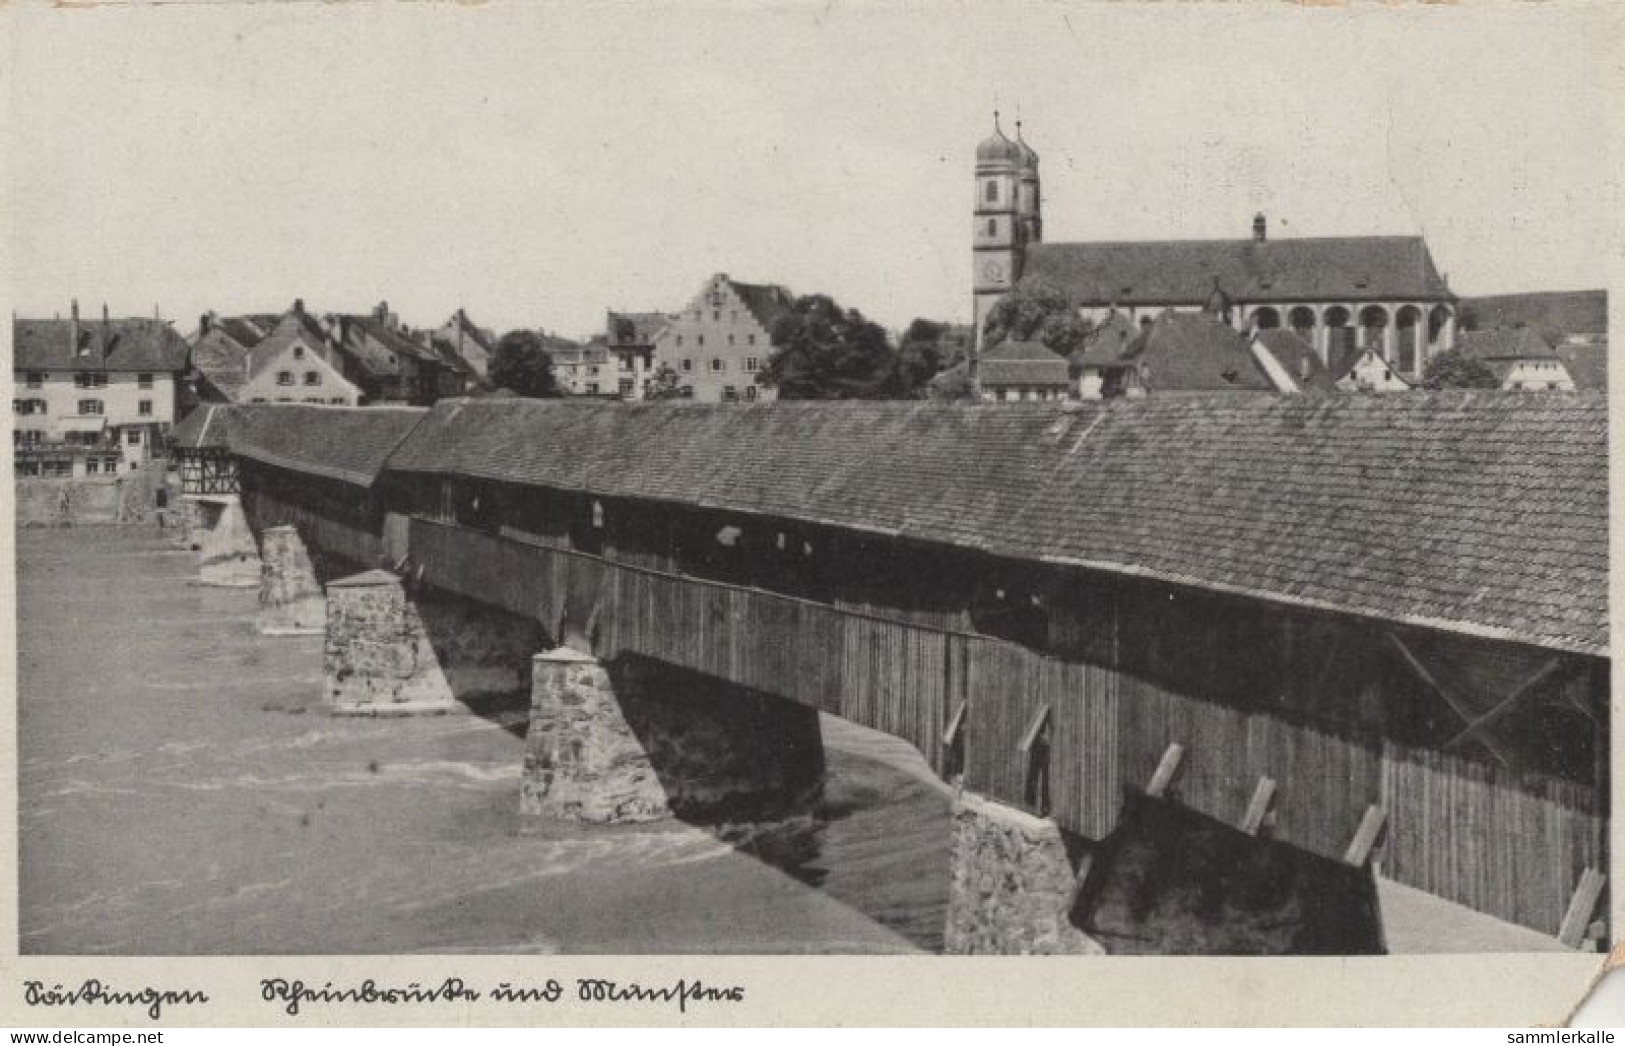 134194 - Bad Säckingen - Rheinbrücke Und Münster - Bad Saeckingen